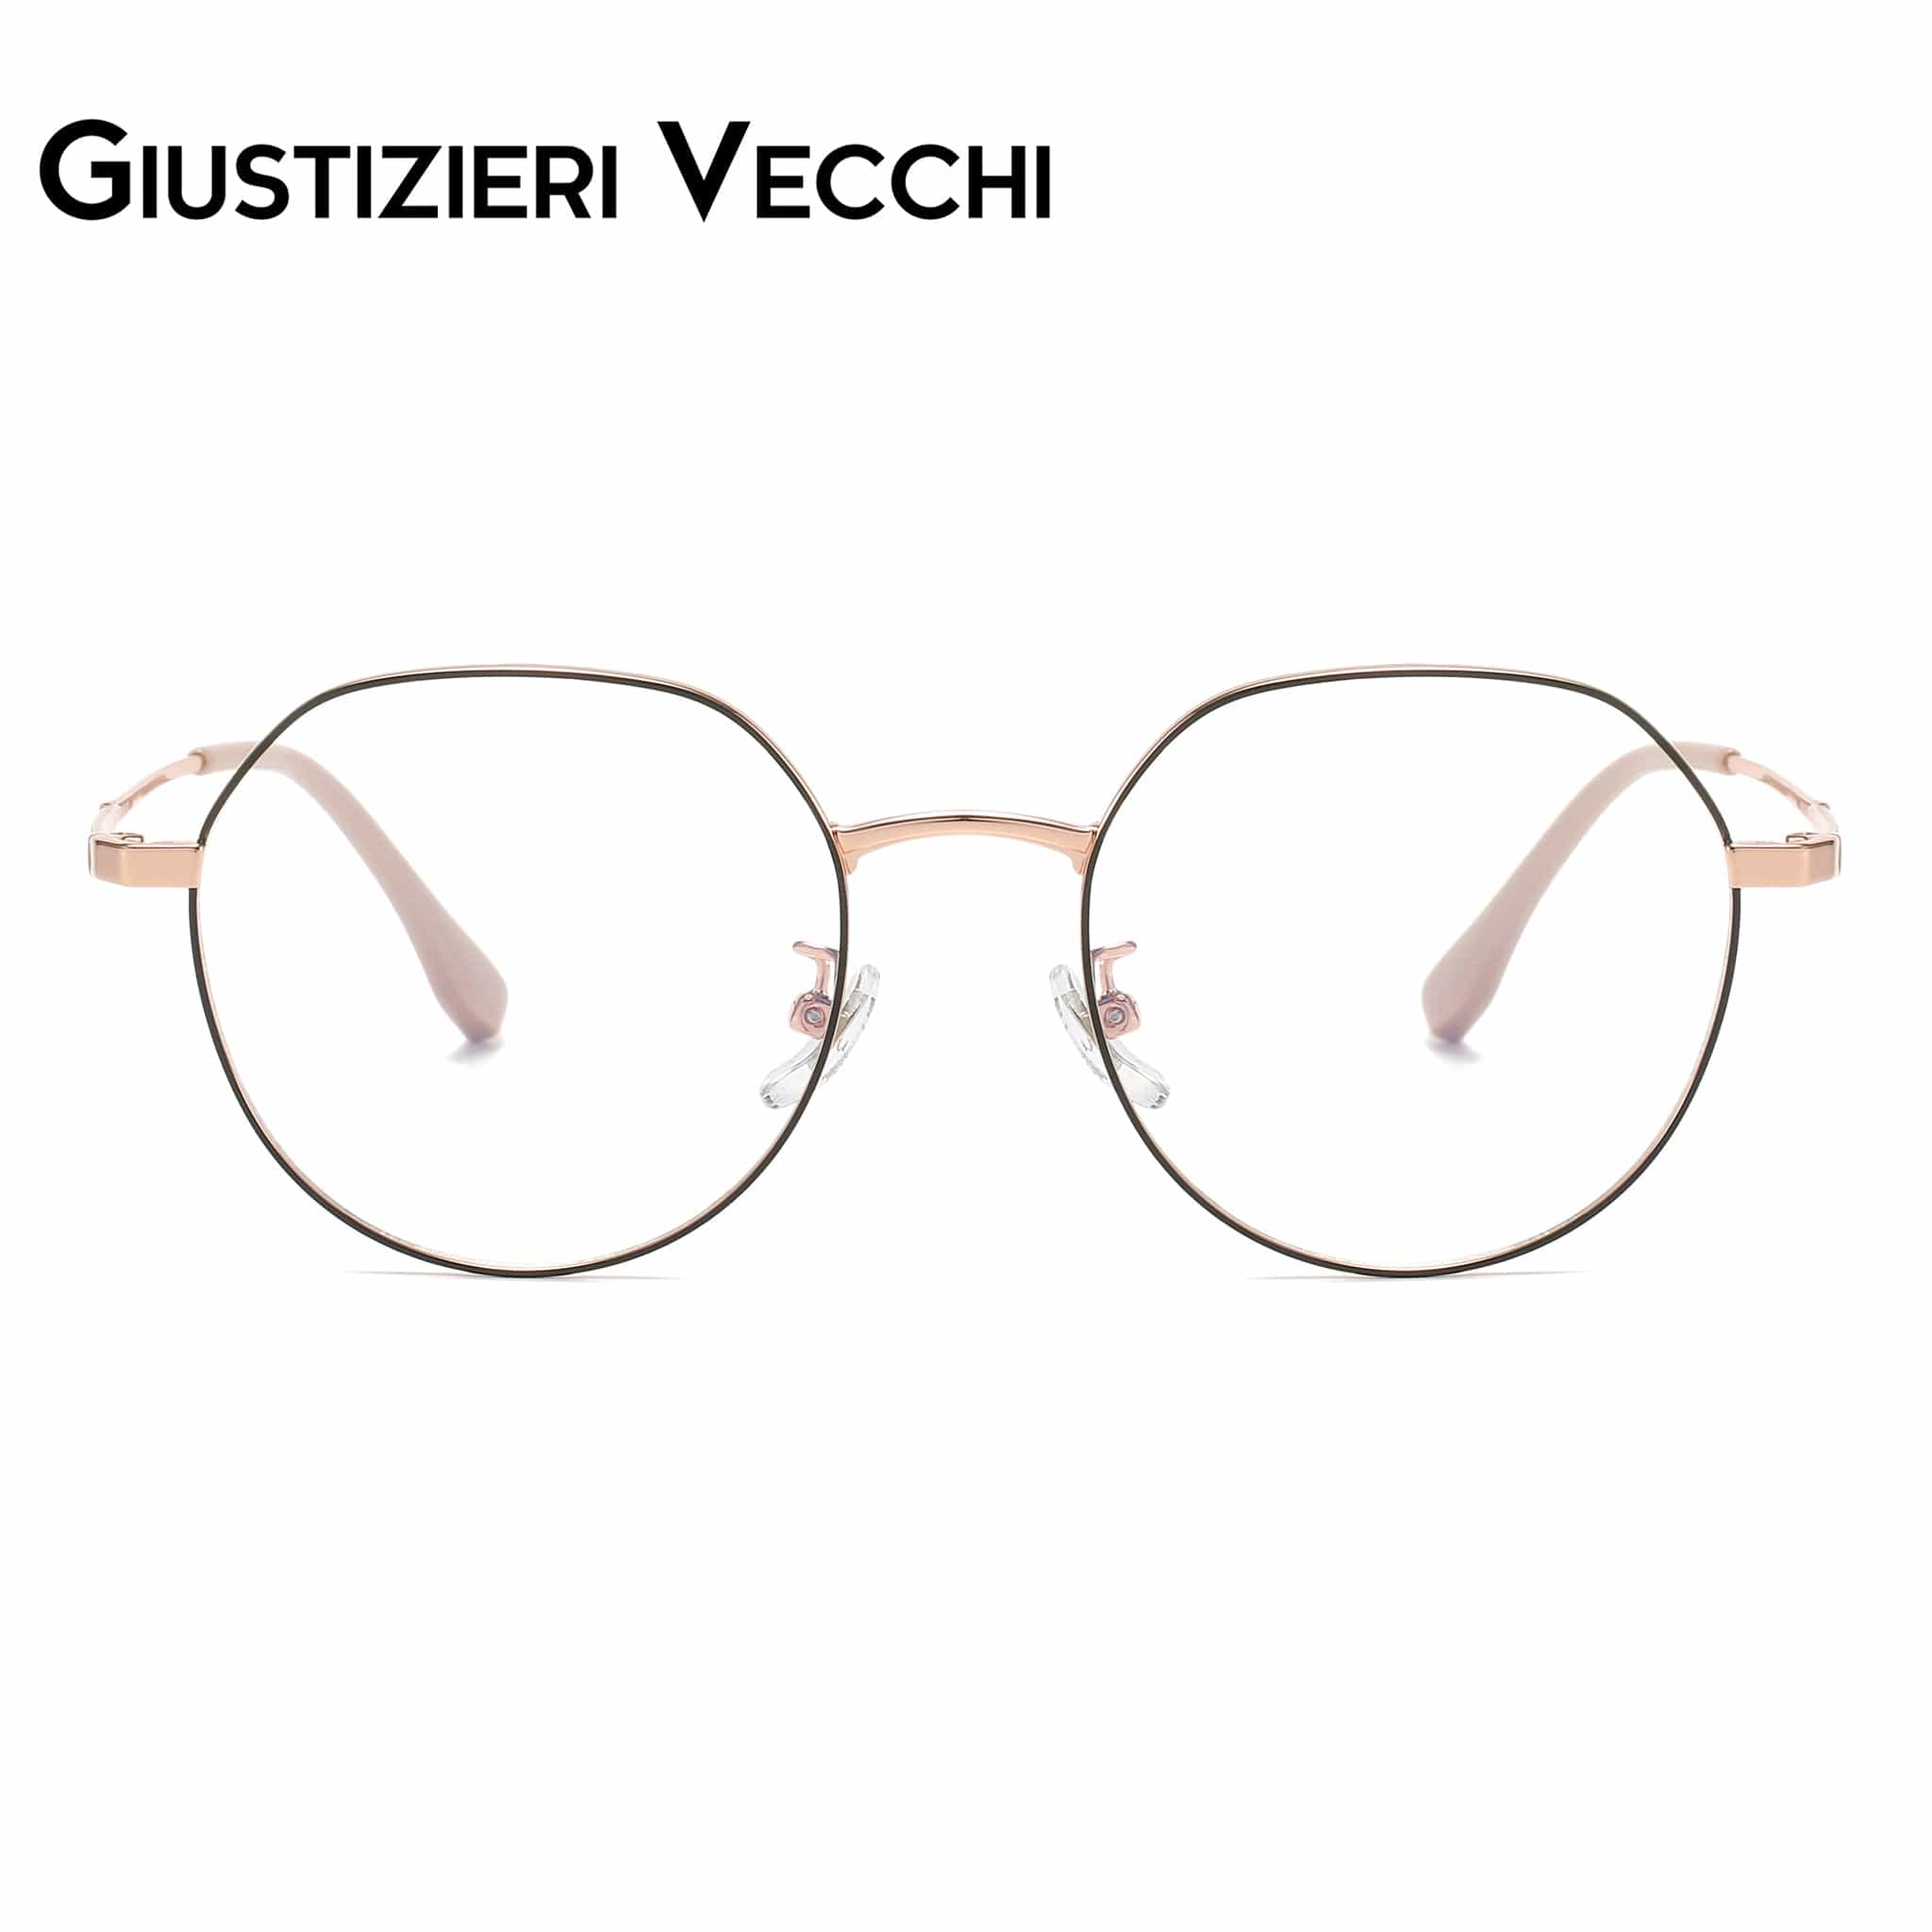 GIUSTIZIERI VECCHI Eyeglasses Small / Black with Rose Gold CoolSonic Uno